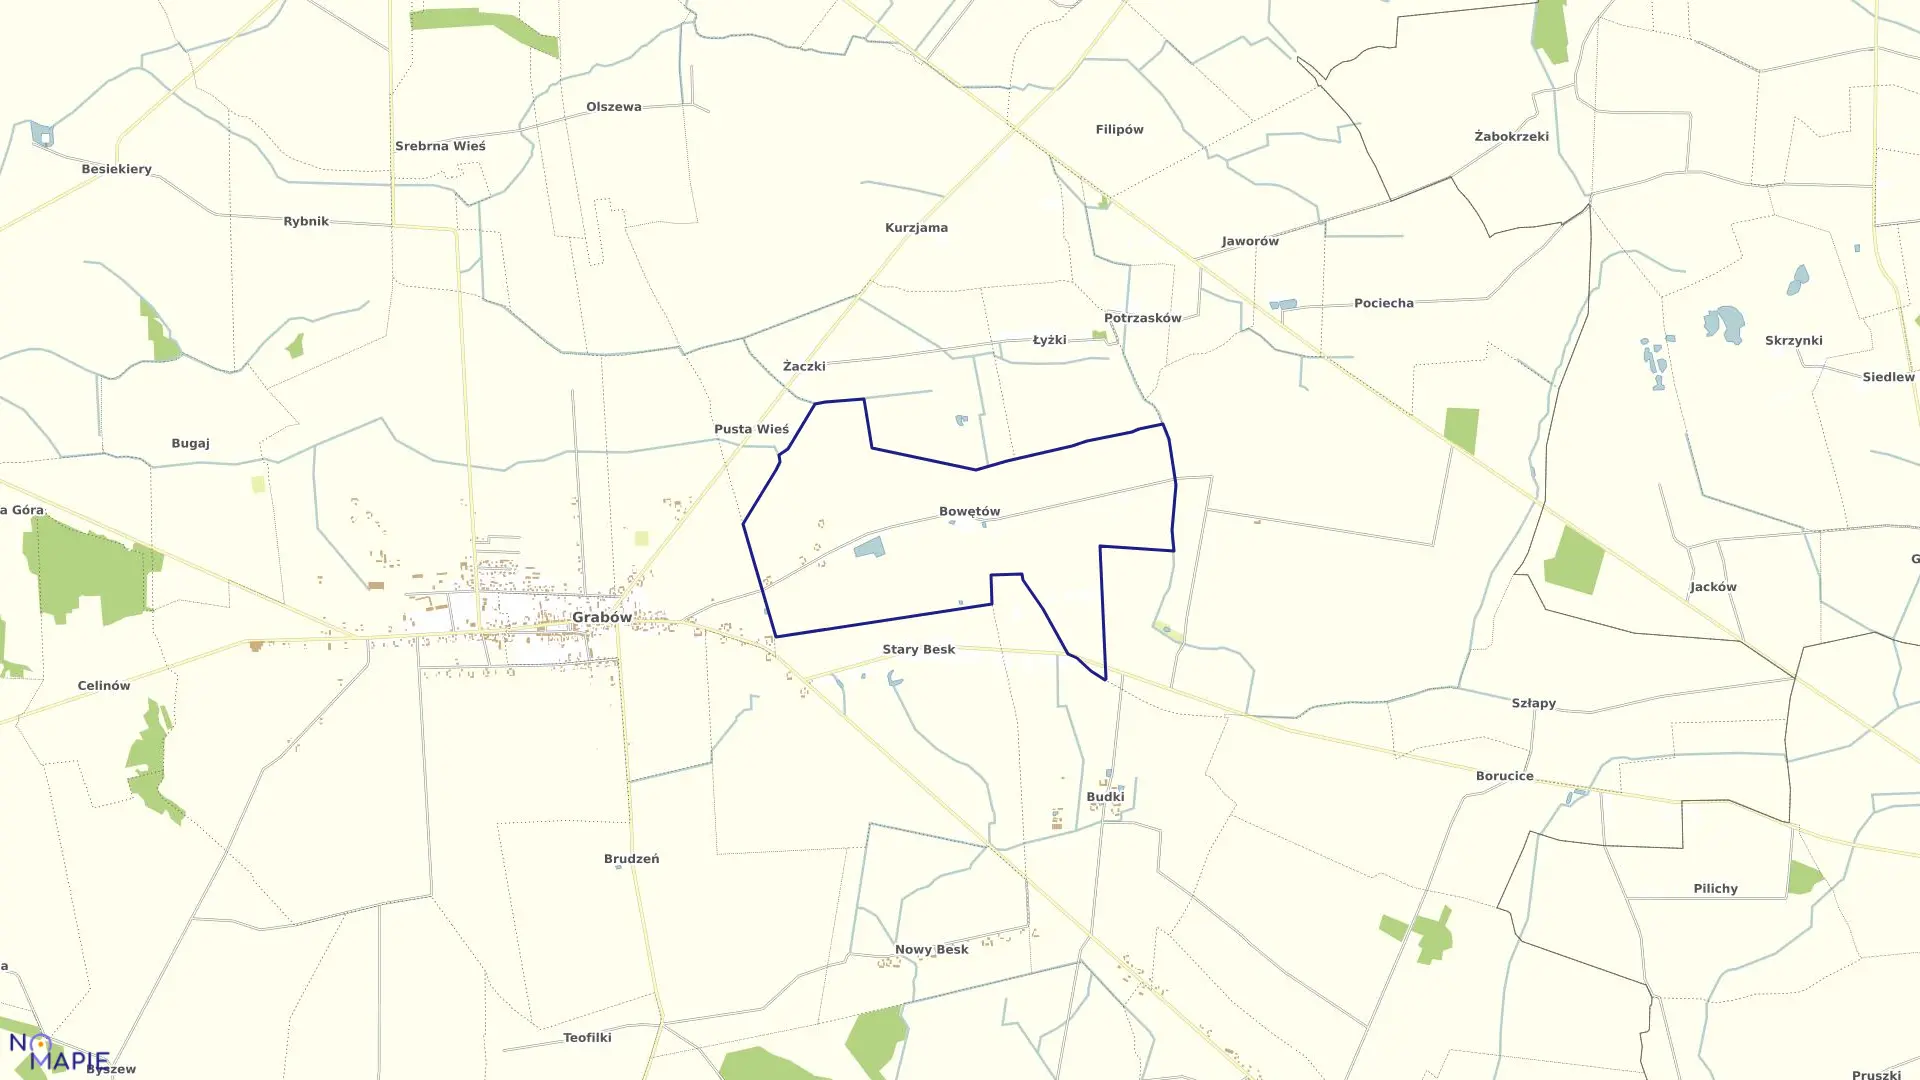 Mapa obrębu BOWĘTÓW-KLINY-CZAJKI-ŻALE gmina Grabów